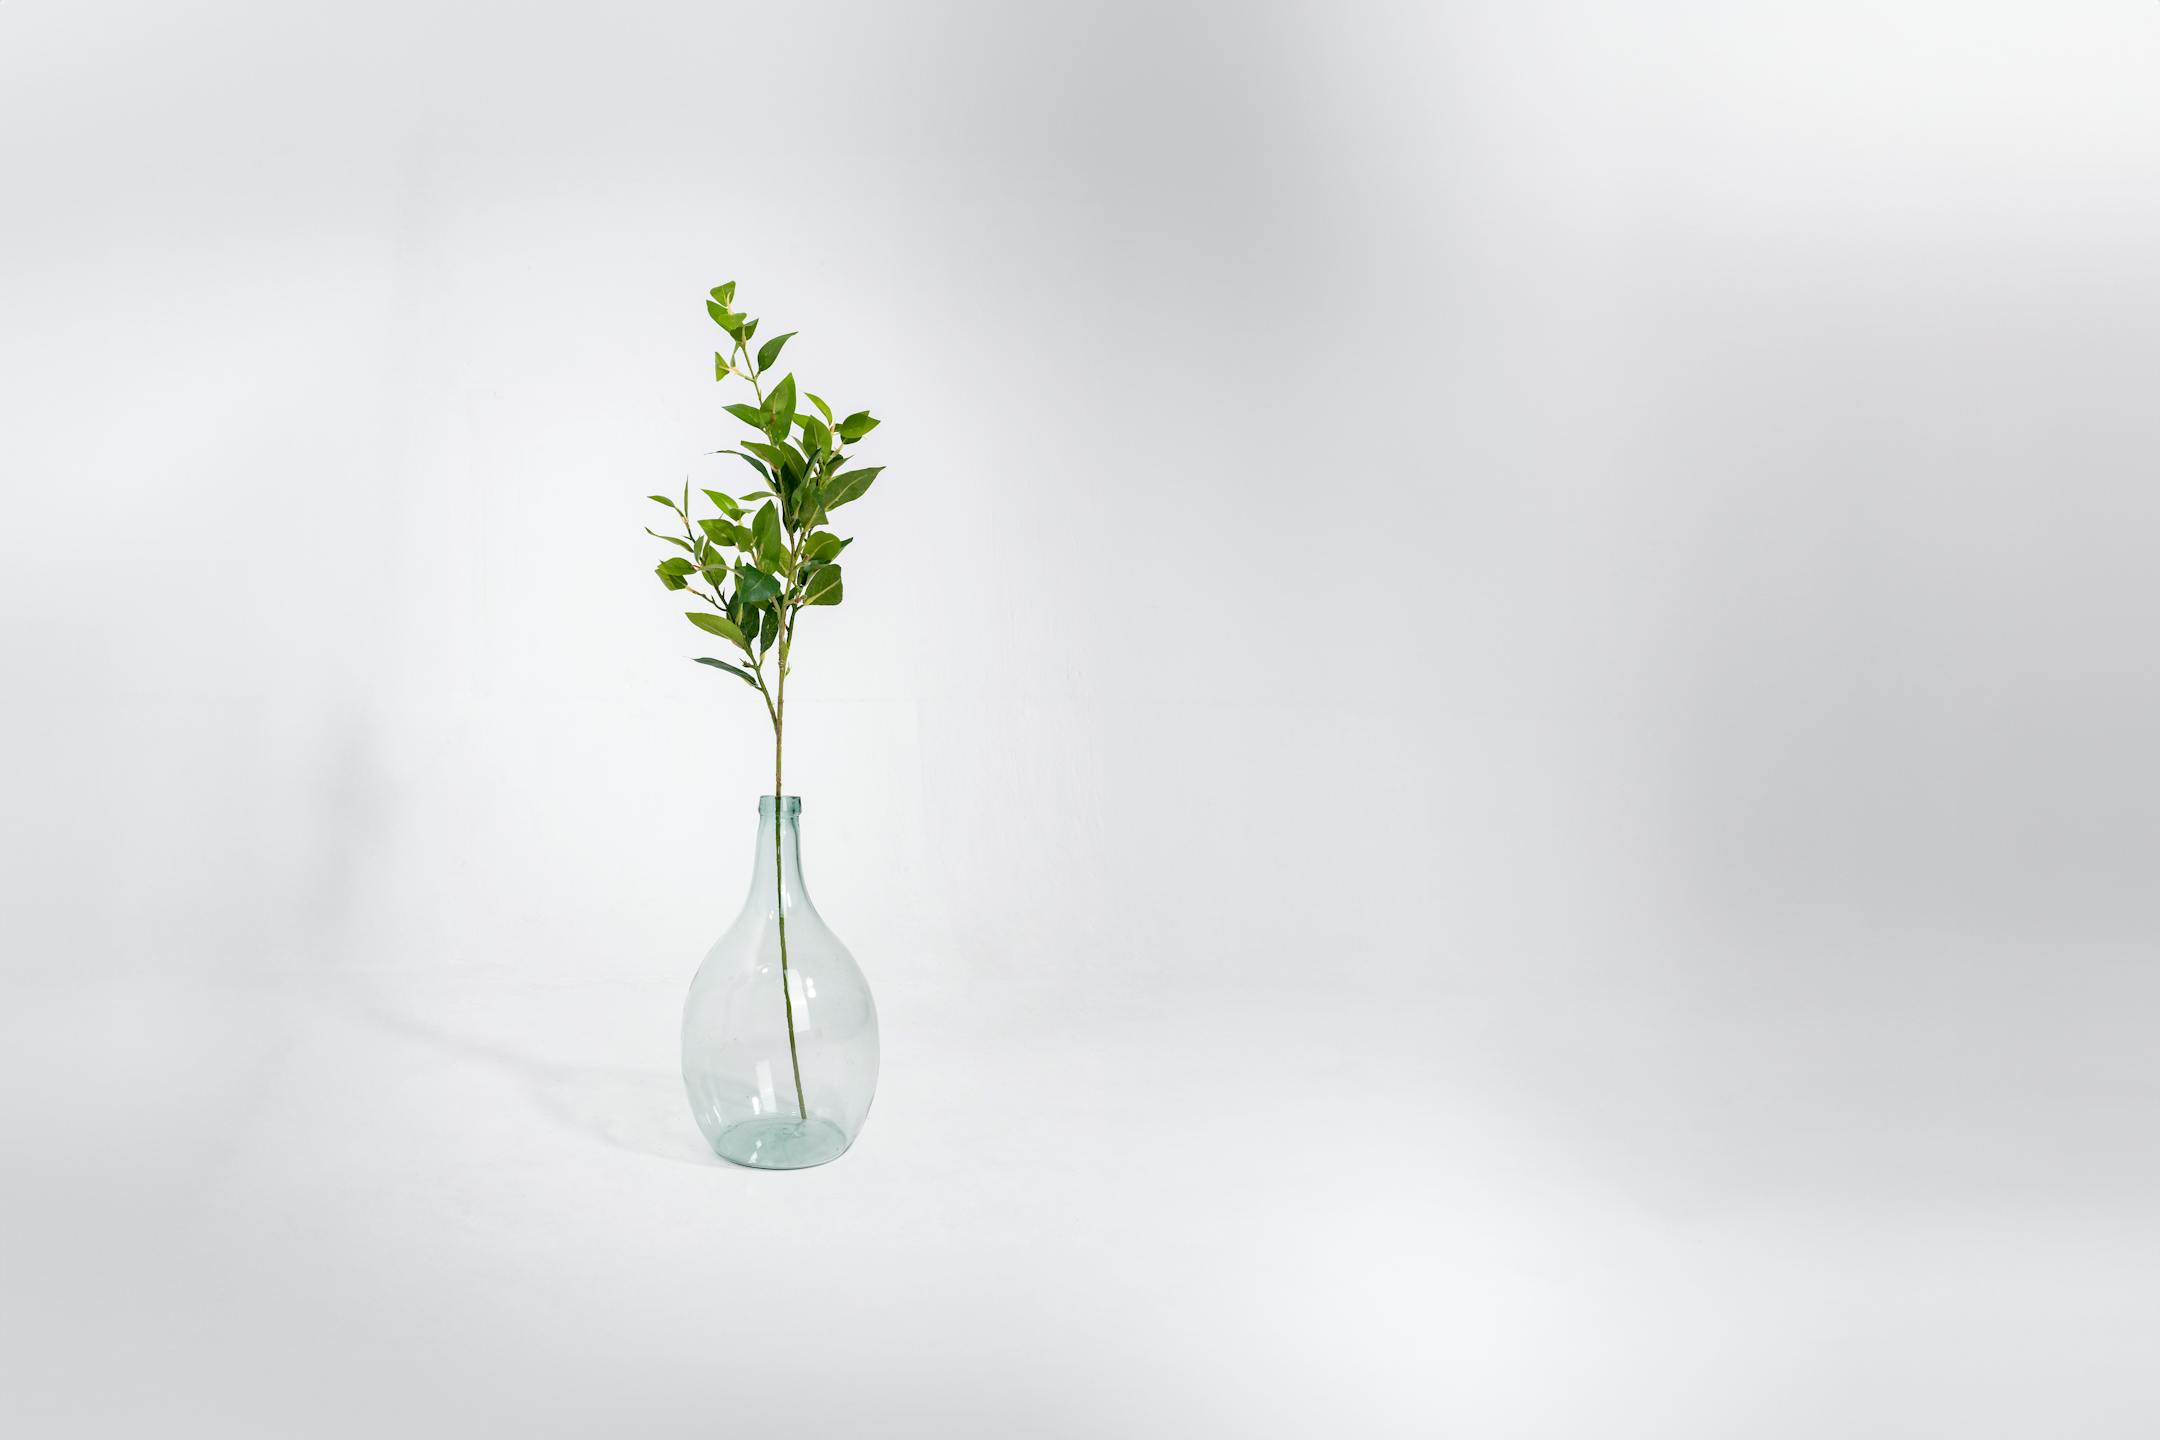 Artificial laurel foliage spray in glass vase